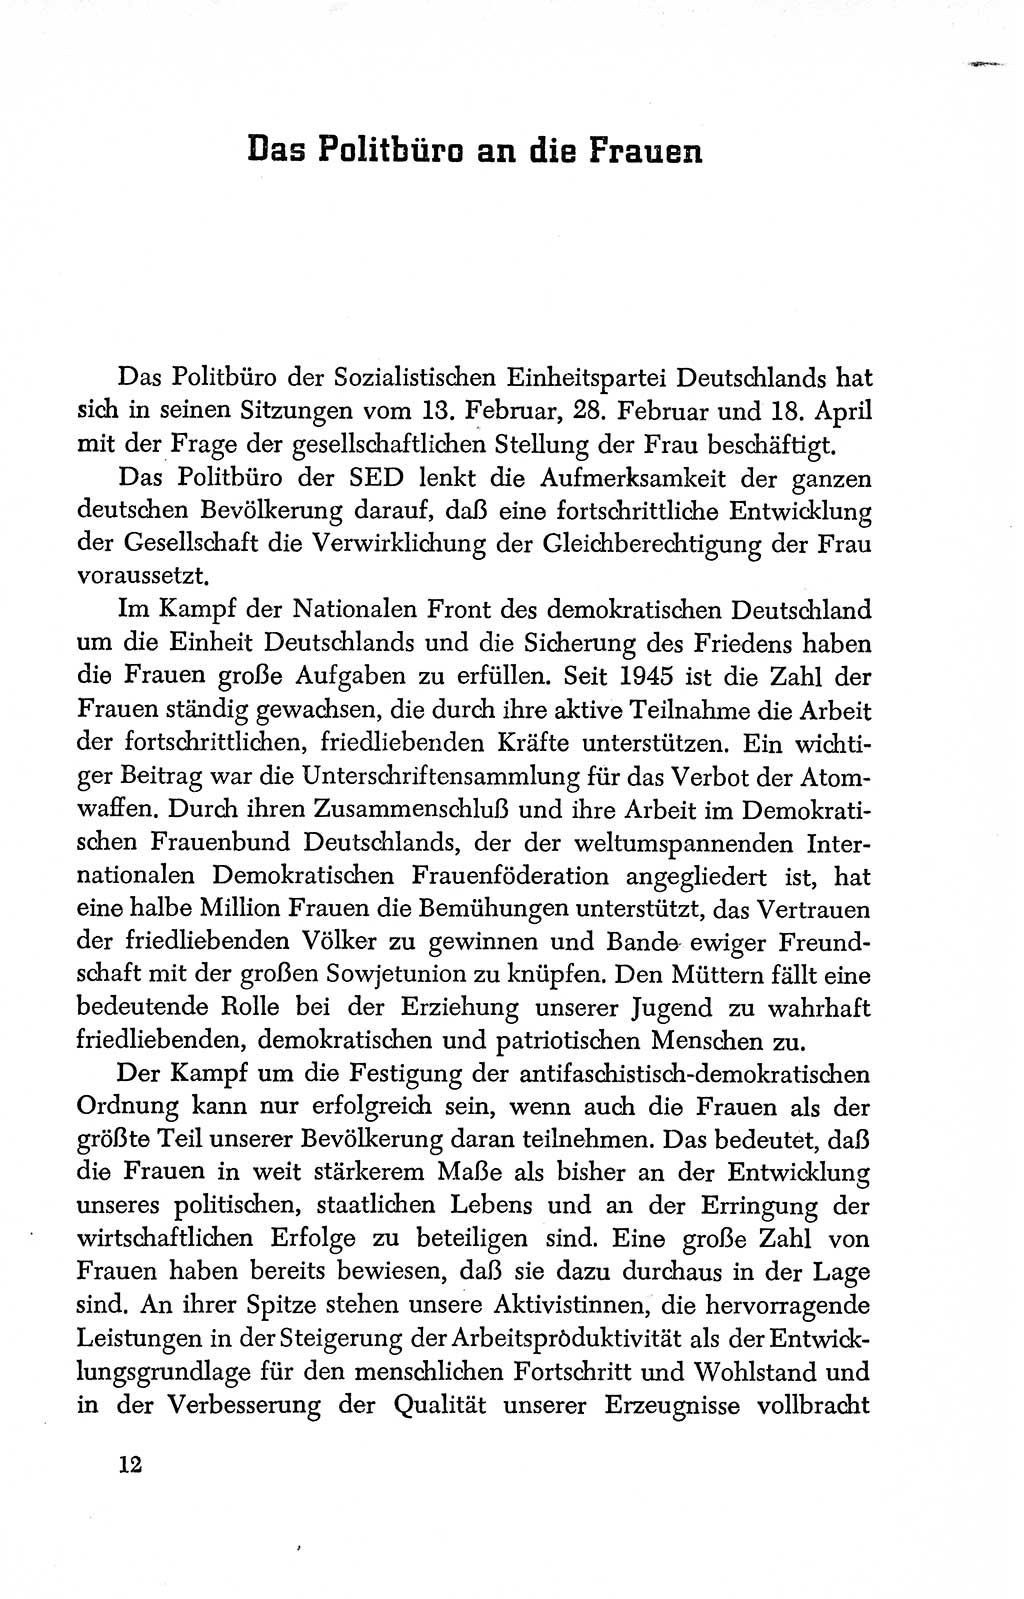 Dokumente der Sozialistischen Einheitspartei Deutschlands (SED) [Deutsche Demokratische Republik (DDR)] 1950-1952, Seite 12 (Dok. SED DDR 1950-1952, S. 12)